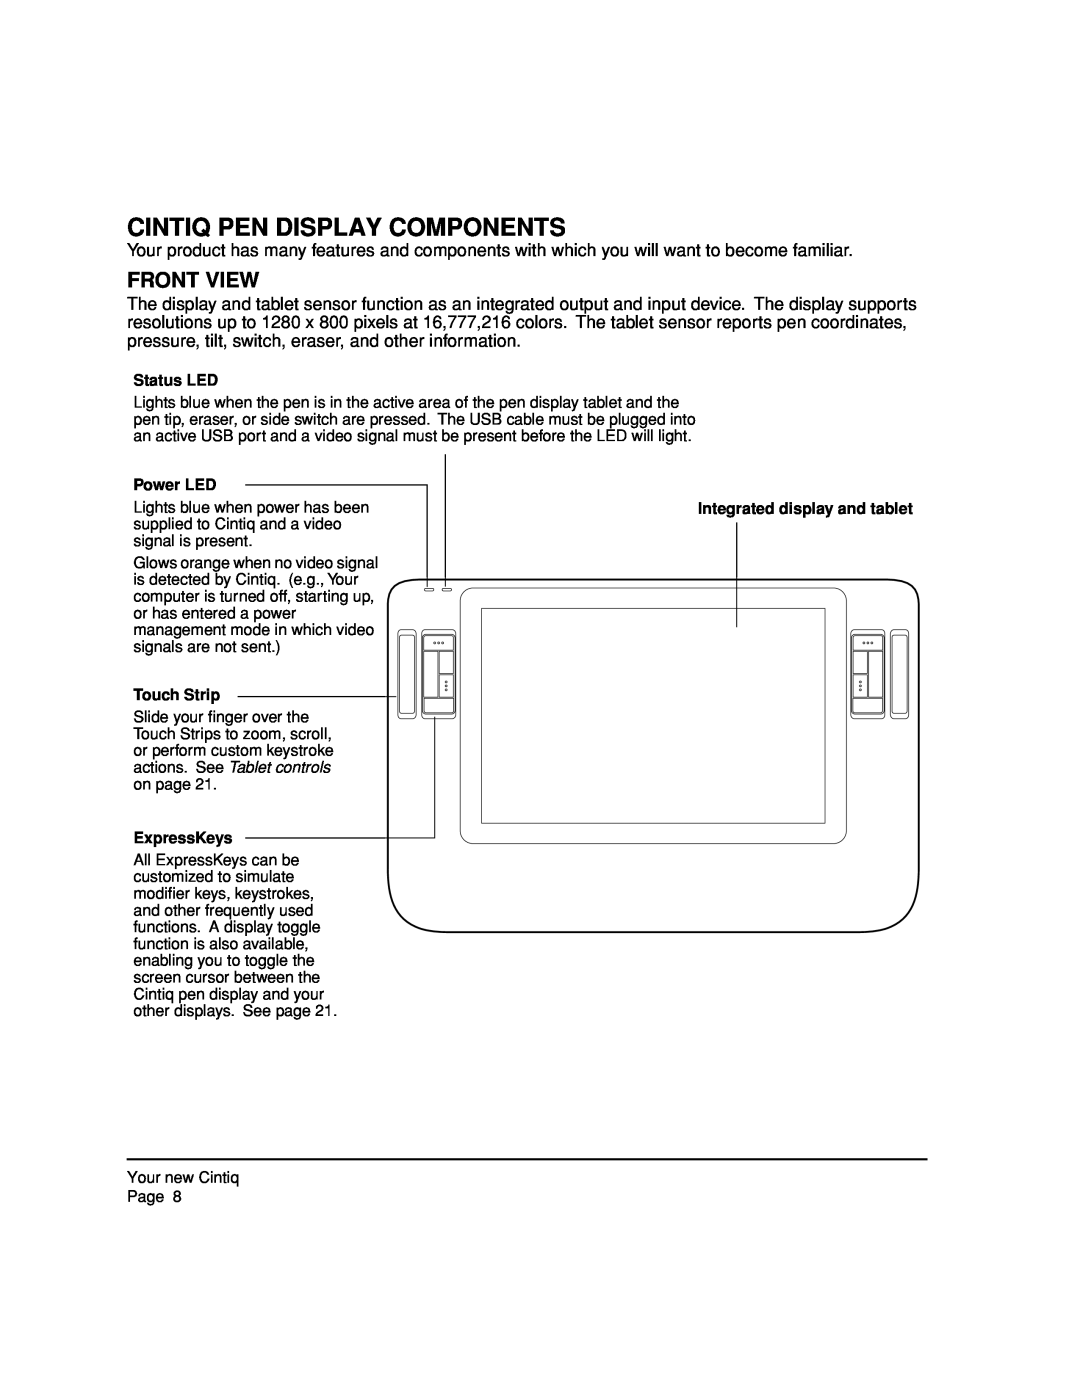 Wacom 12WX, DTZ-1200W manual Cintiq Pen Display Components, Front View 